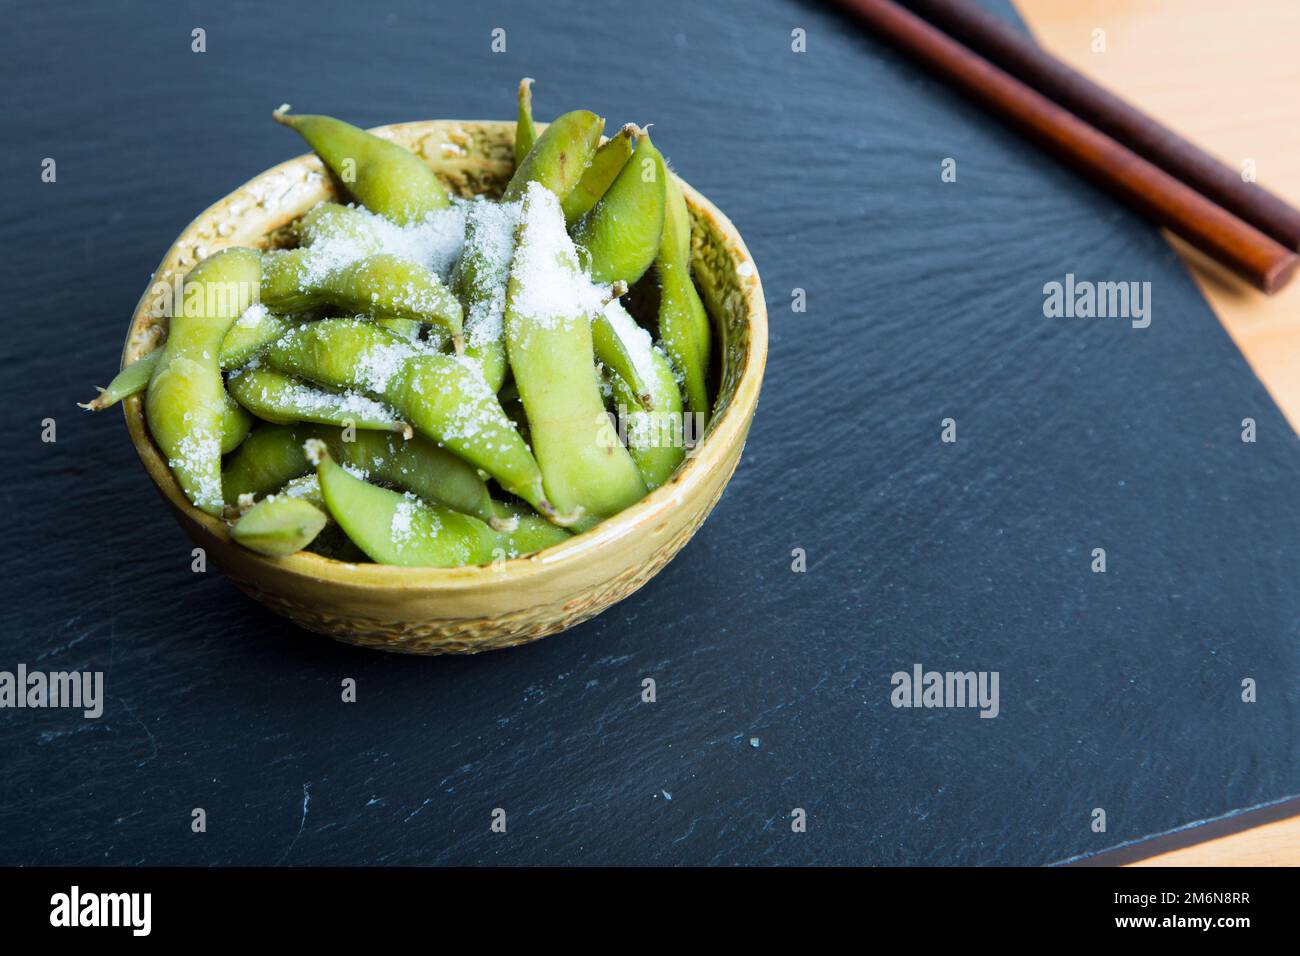 L'edamame è una preparazione di soia immatura nel baccello, che si trova in cucine con origini in Asia orientale. Le cialde vengono bollite o cotte al vapore e possono essere servite Foto Stock